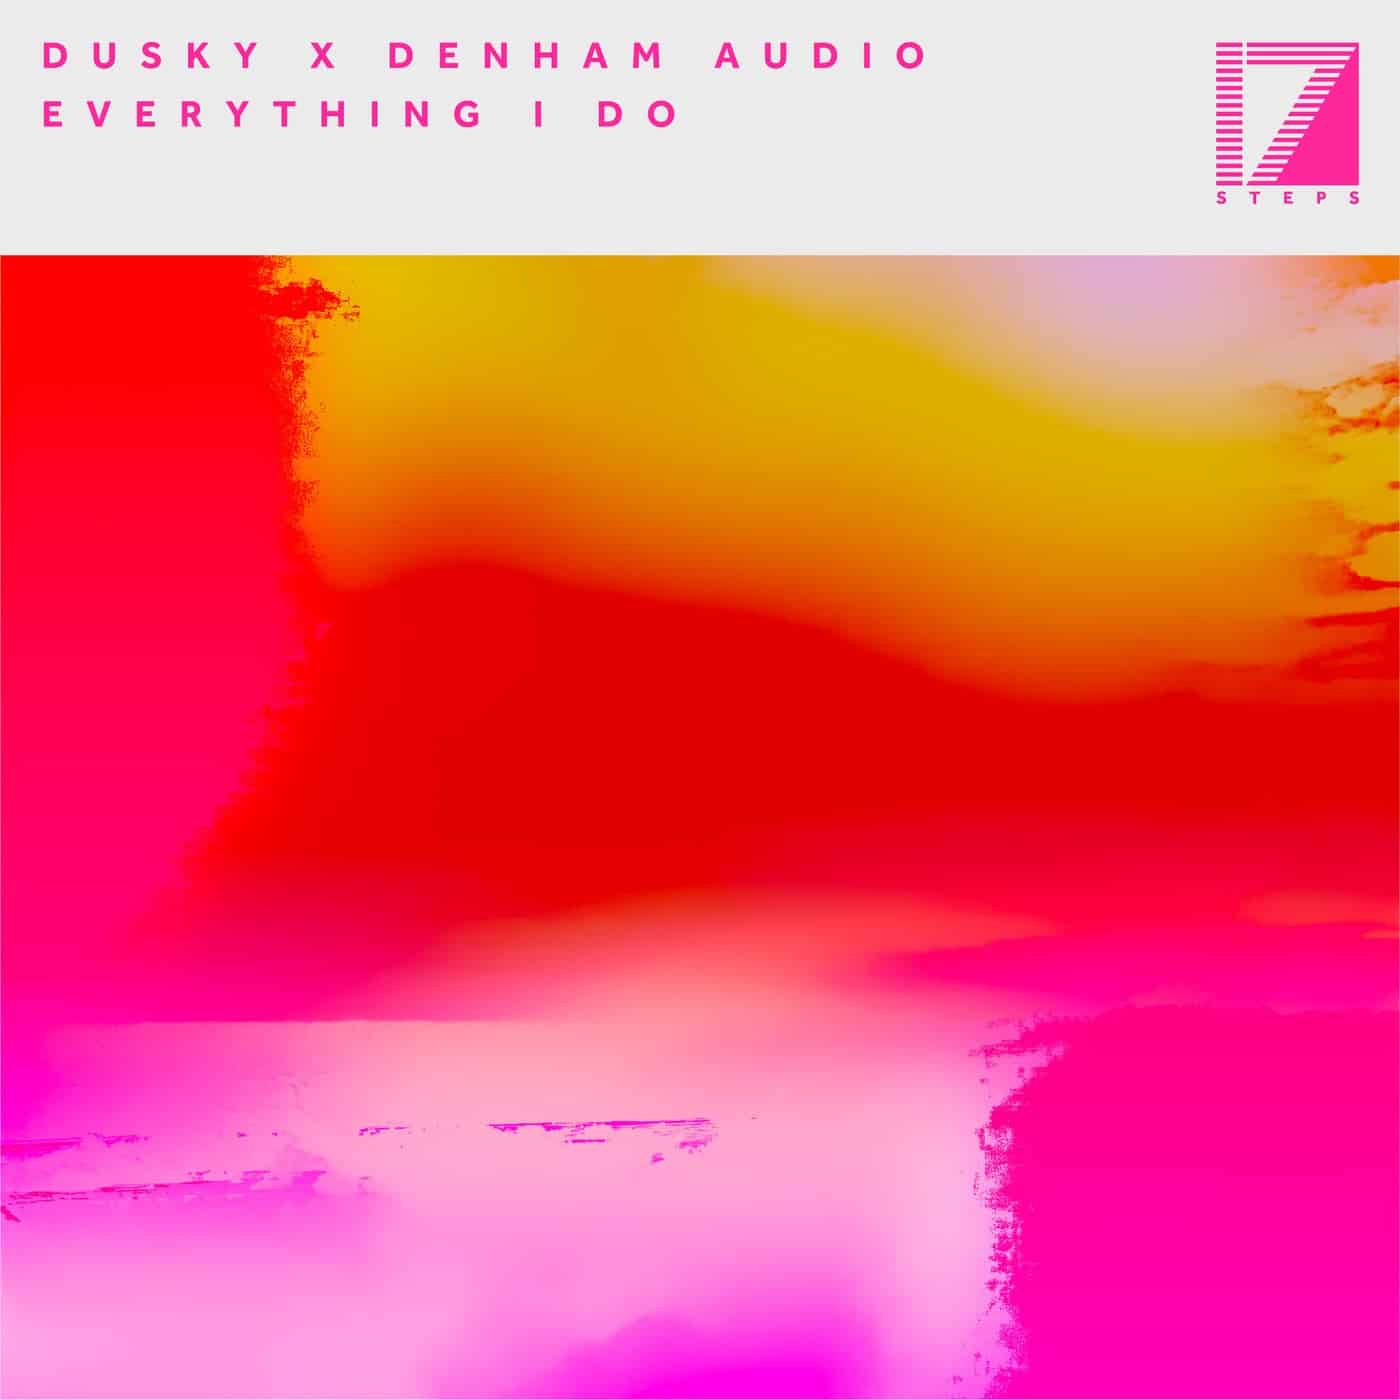 Release Cover: Dusky, Denham Audio - Everything I Do on Electrobuzz